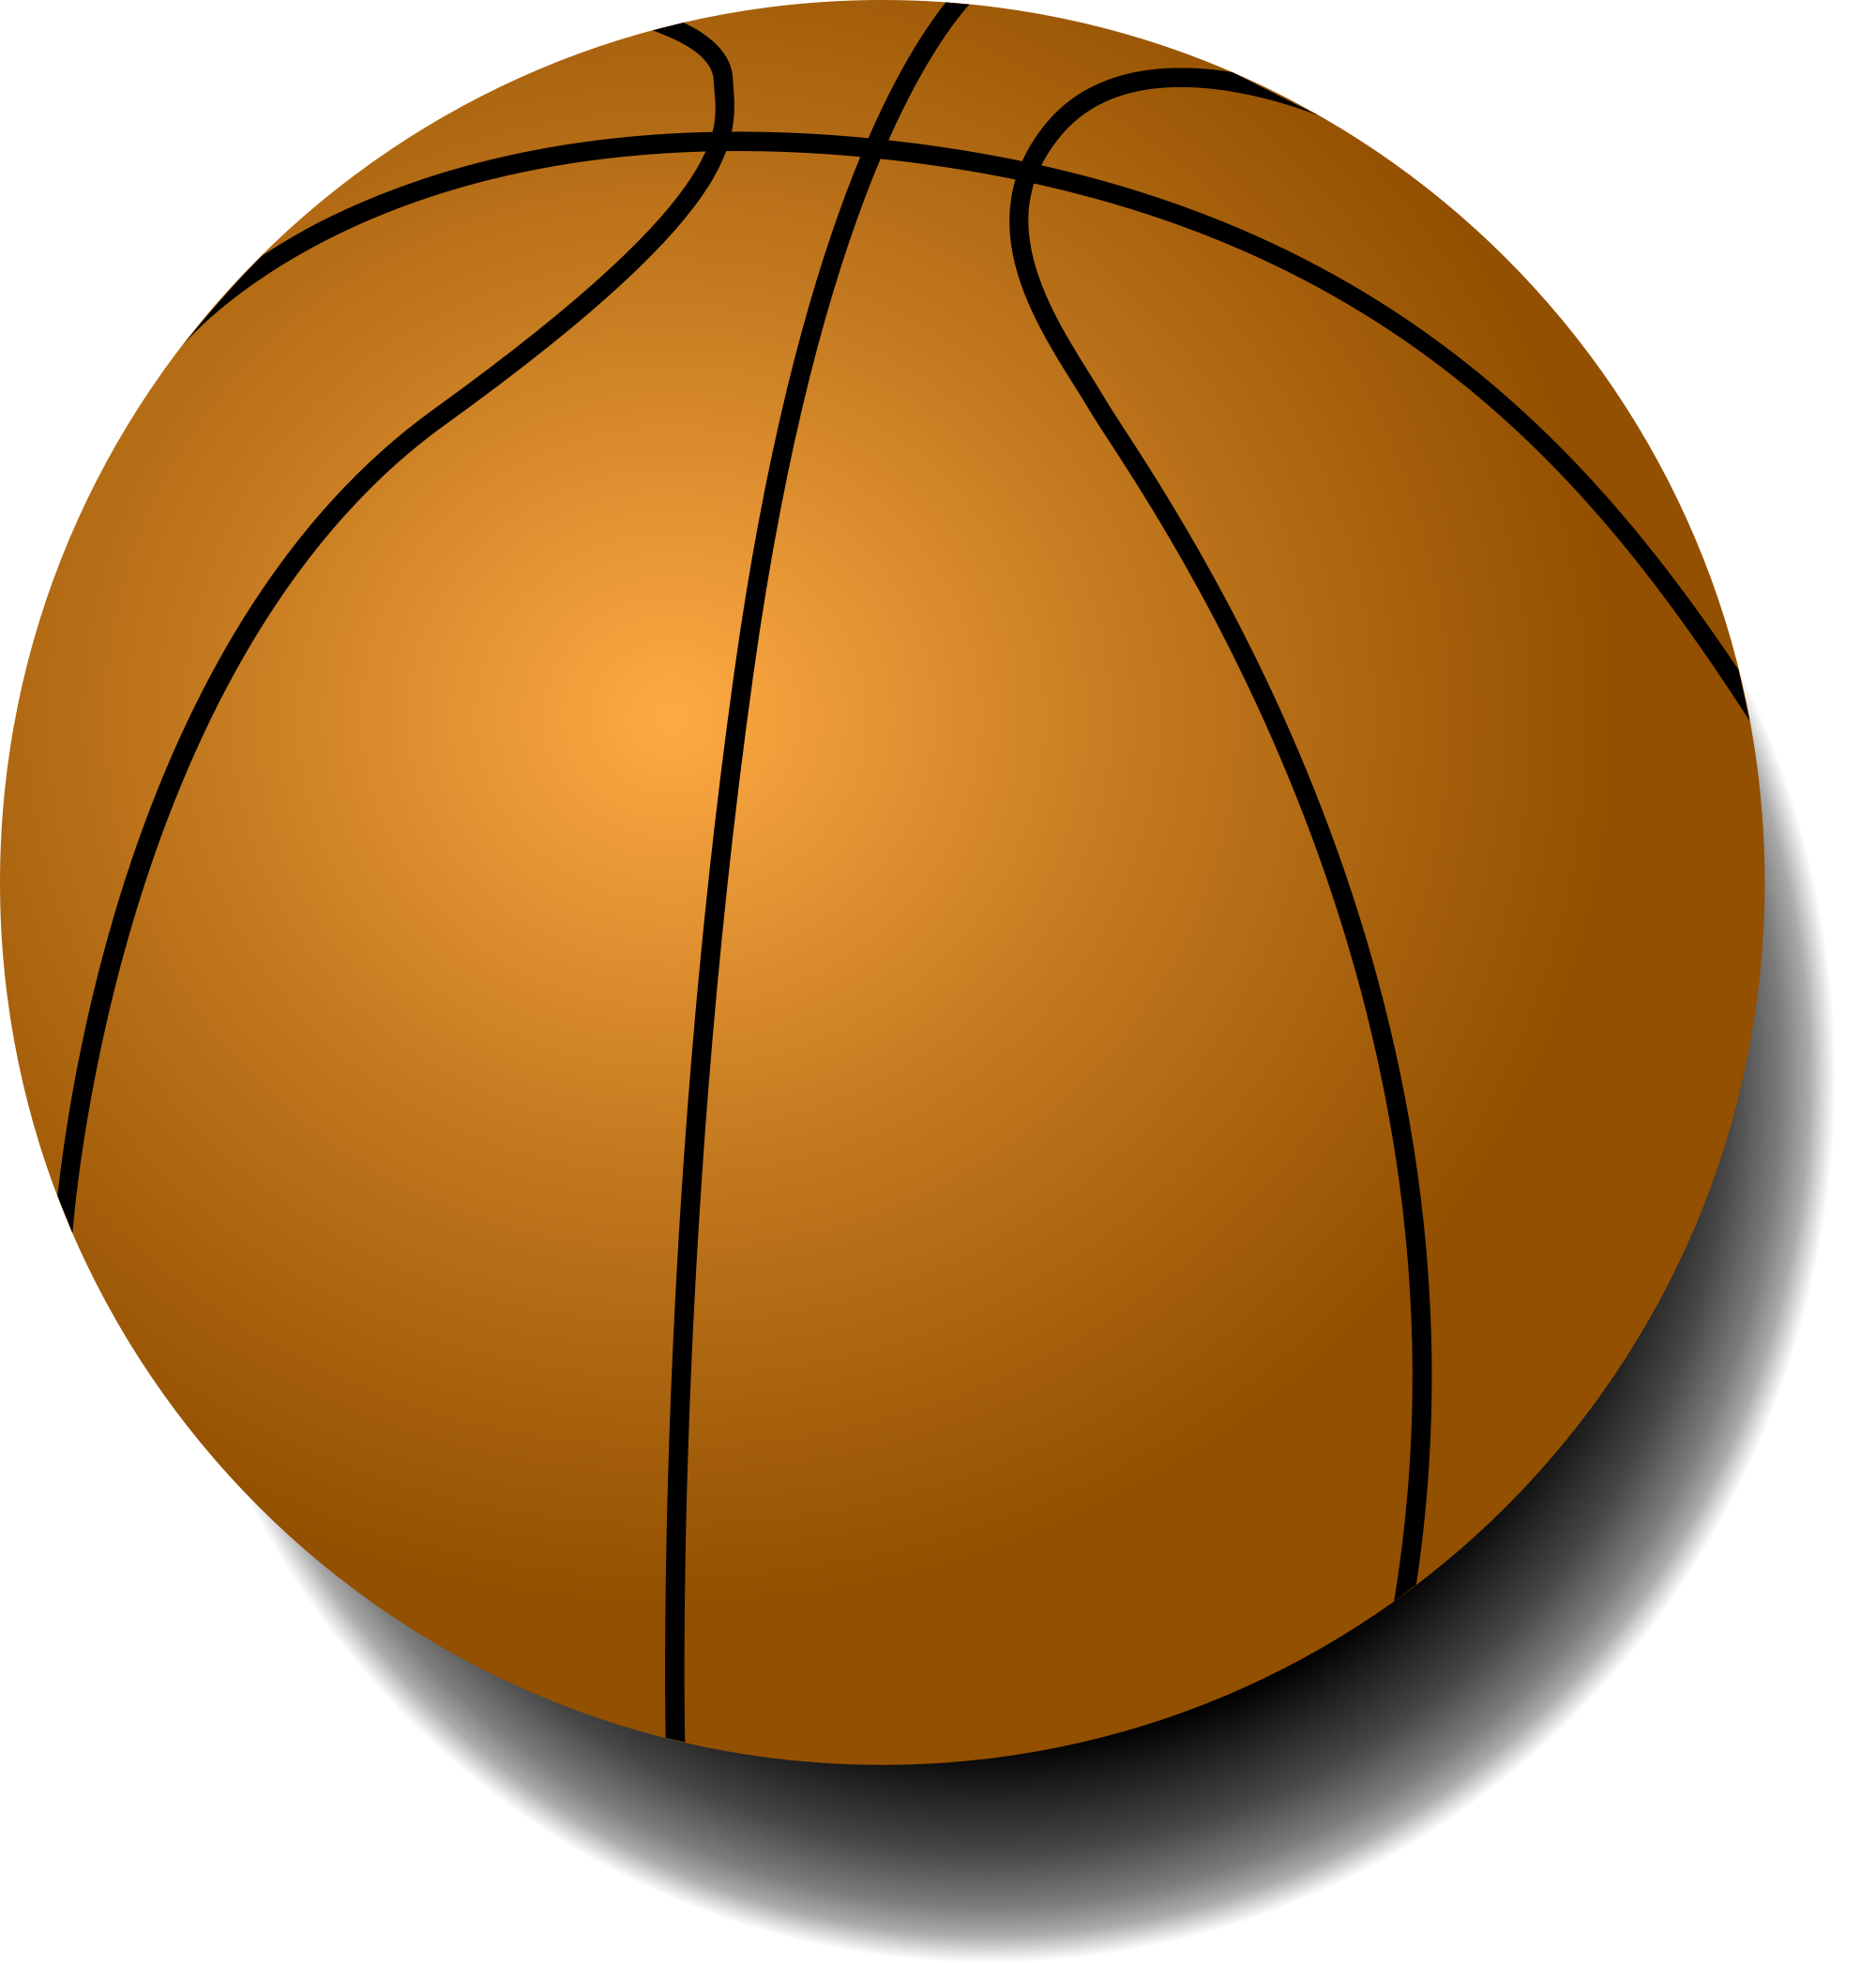 Basketball street basketball